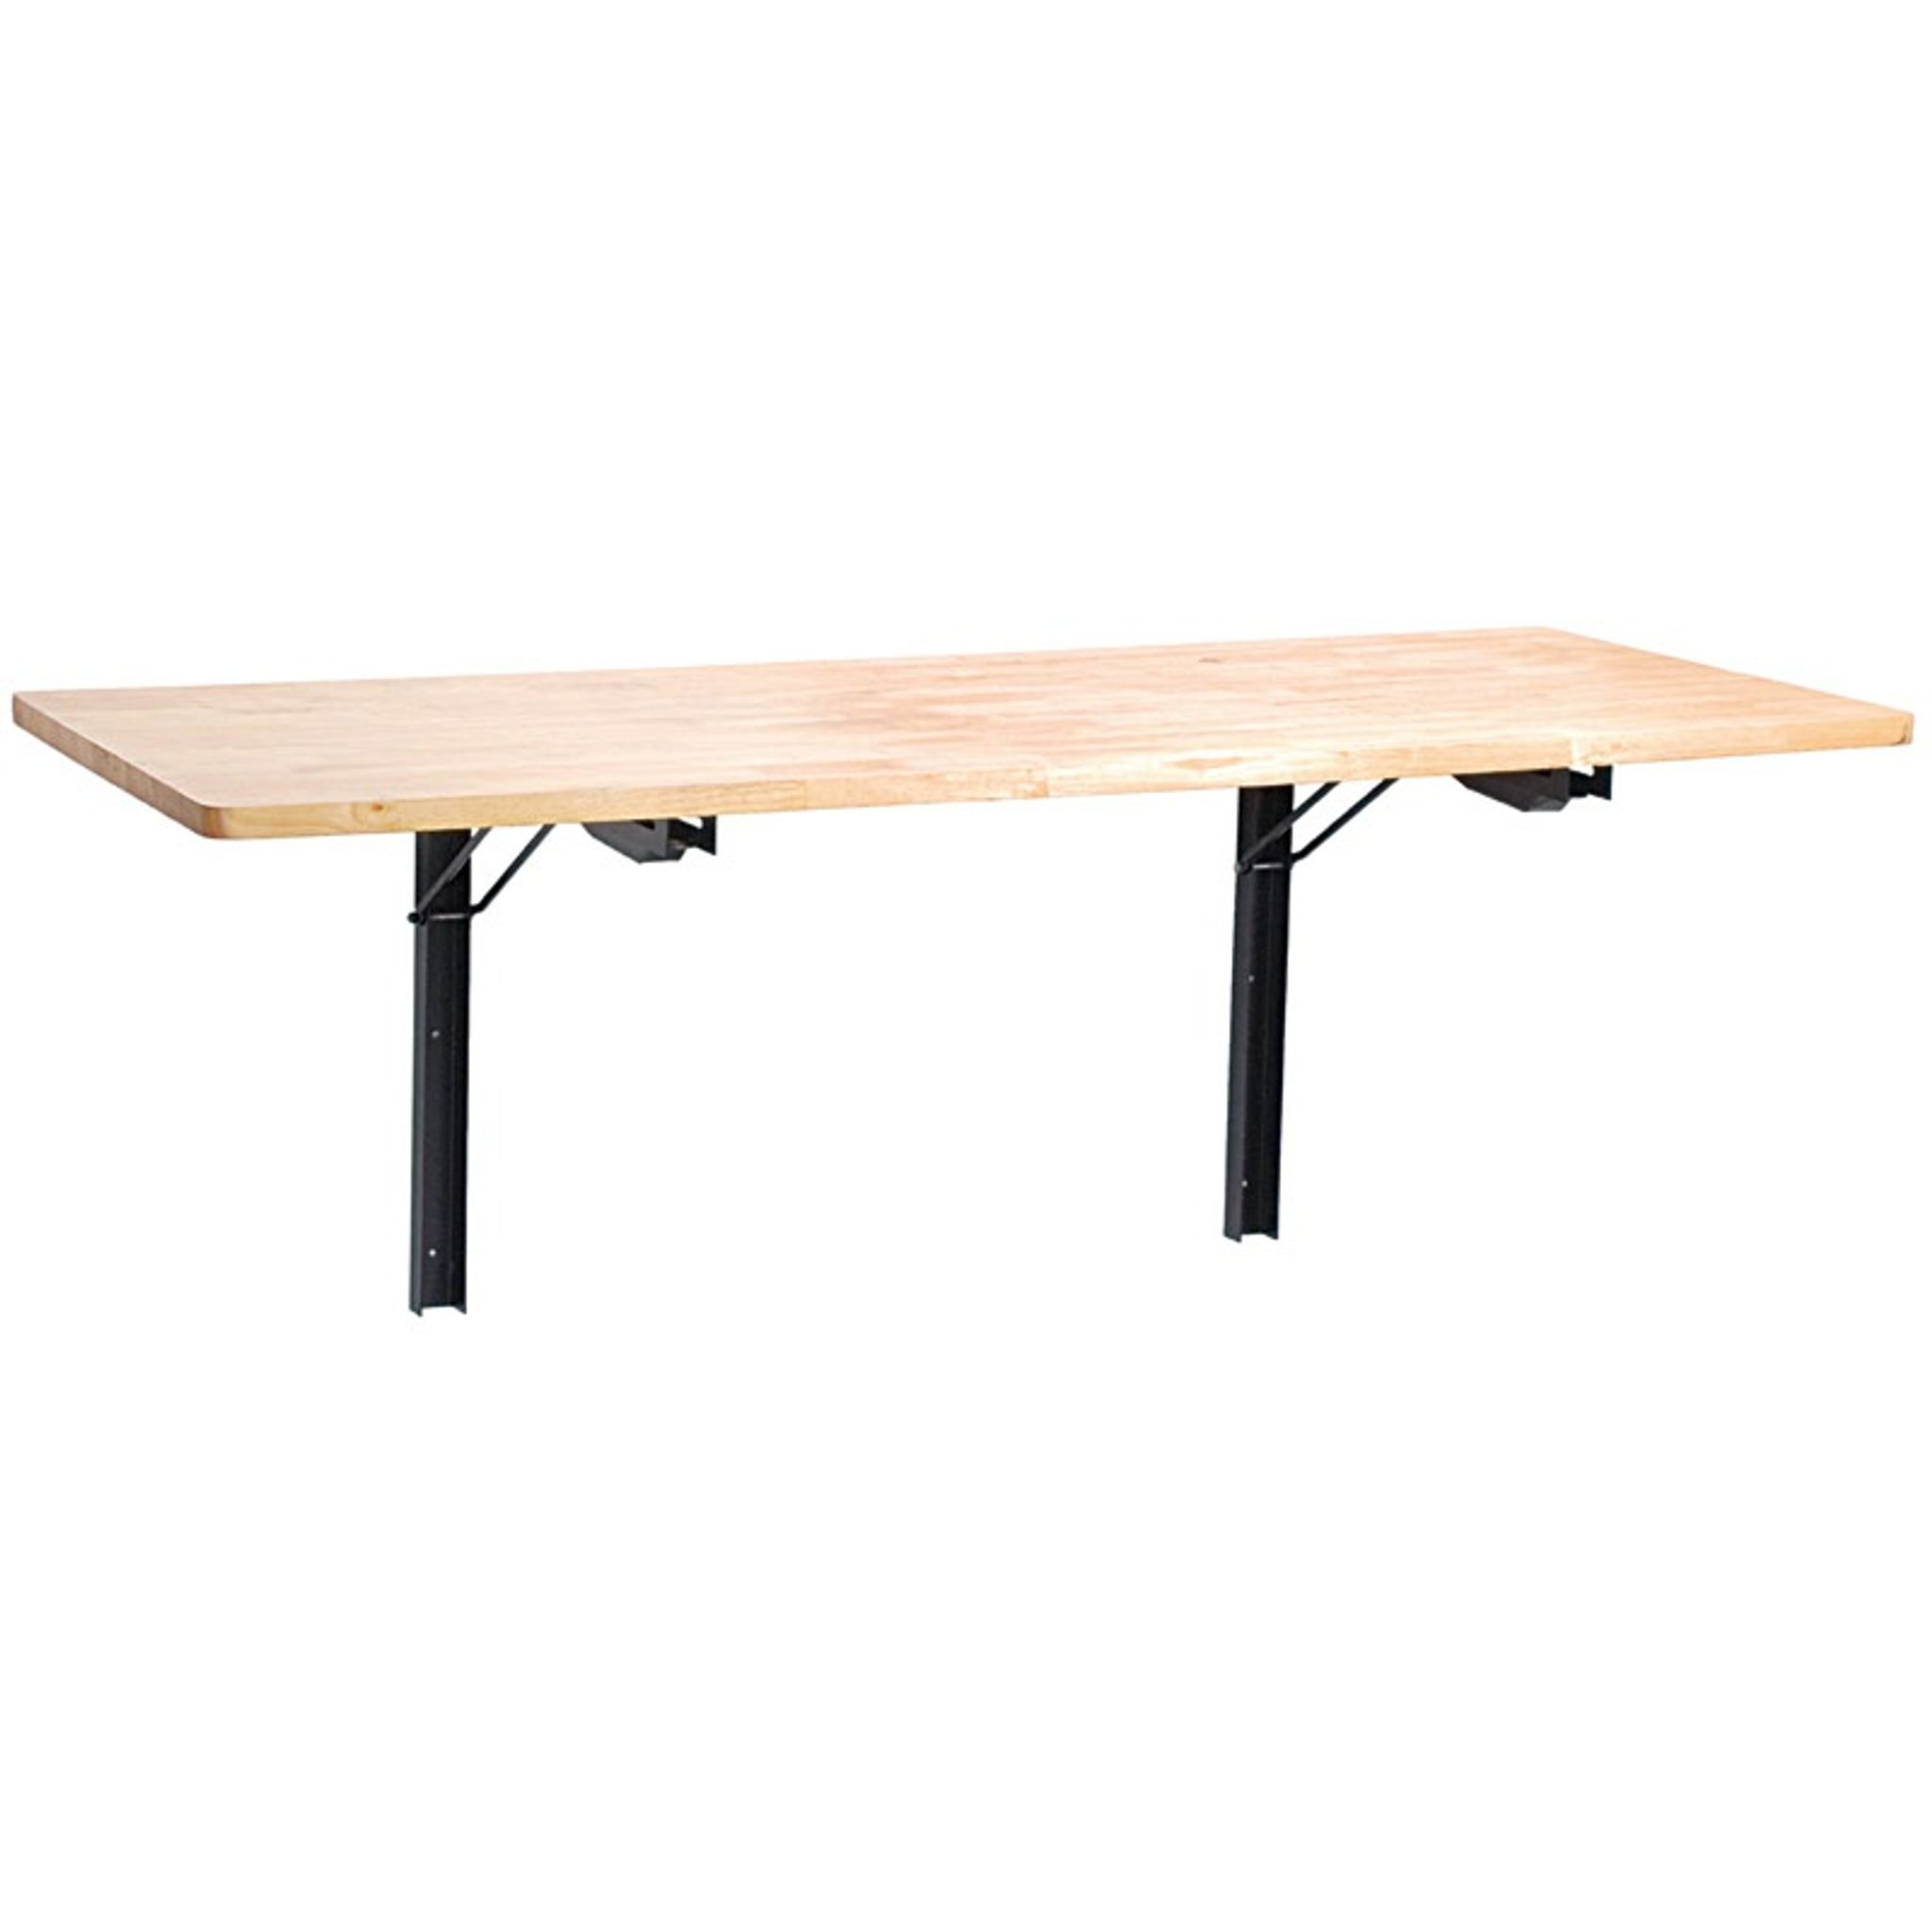 Klappbarer Tisch für die Wand, 1200 x 580 mm